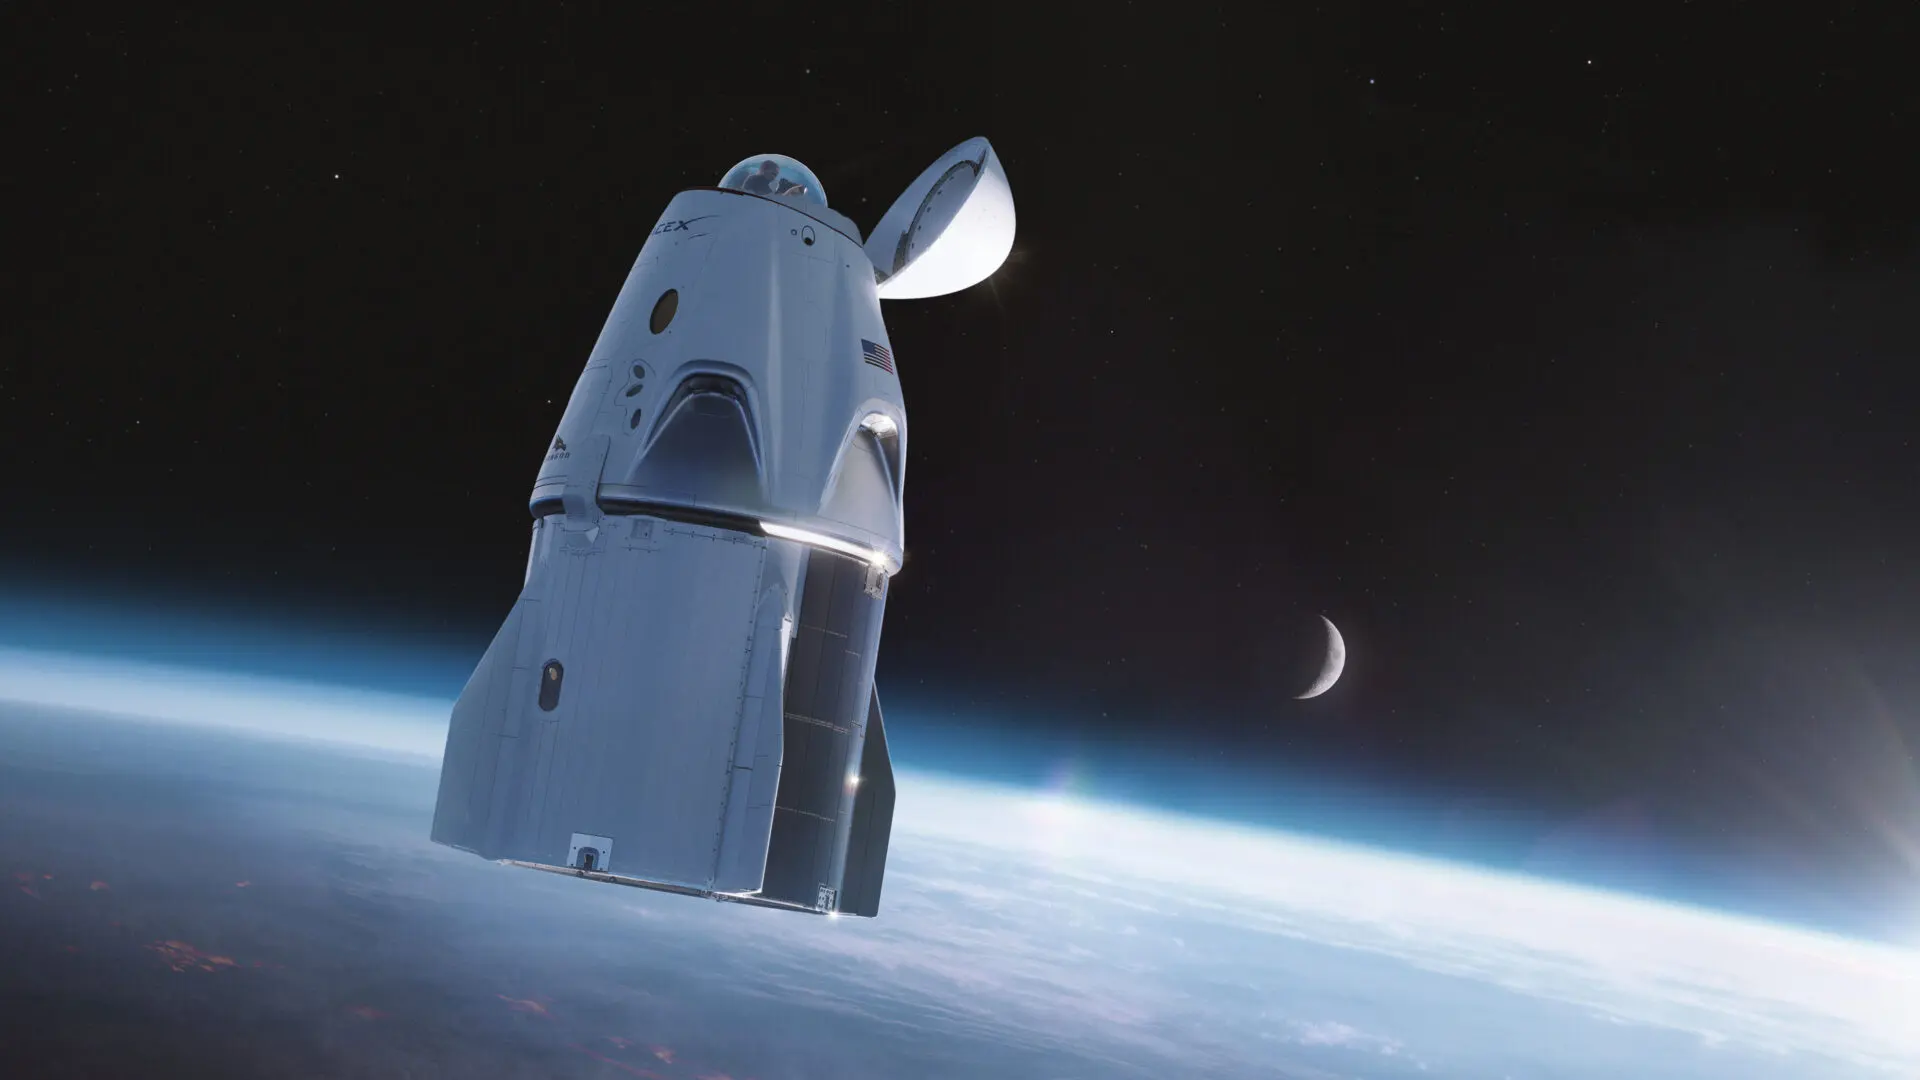 Chuyến bay Inspiration4 chở 4 dân thường của SpaceX sẽ bay cao hơn ISS suốt 3 ngày